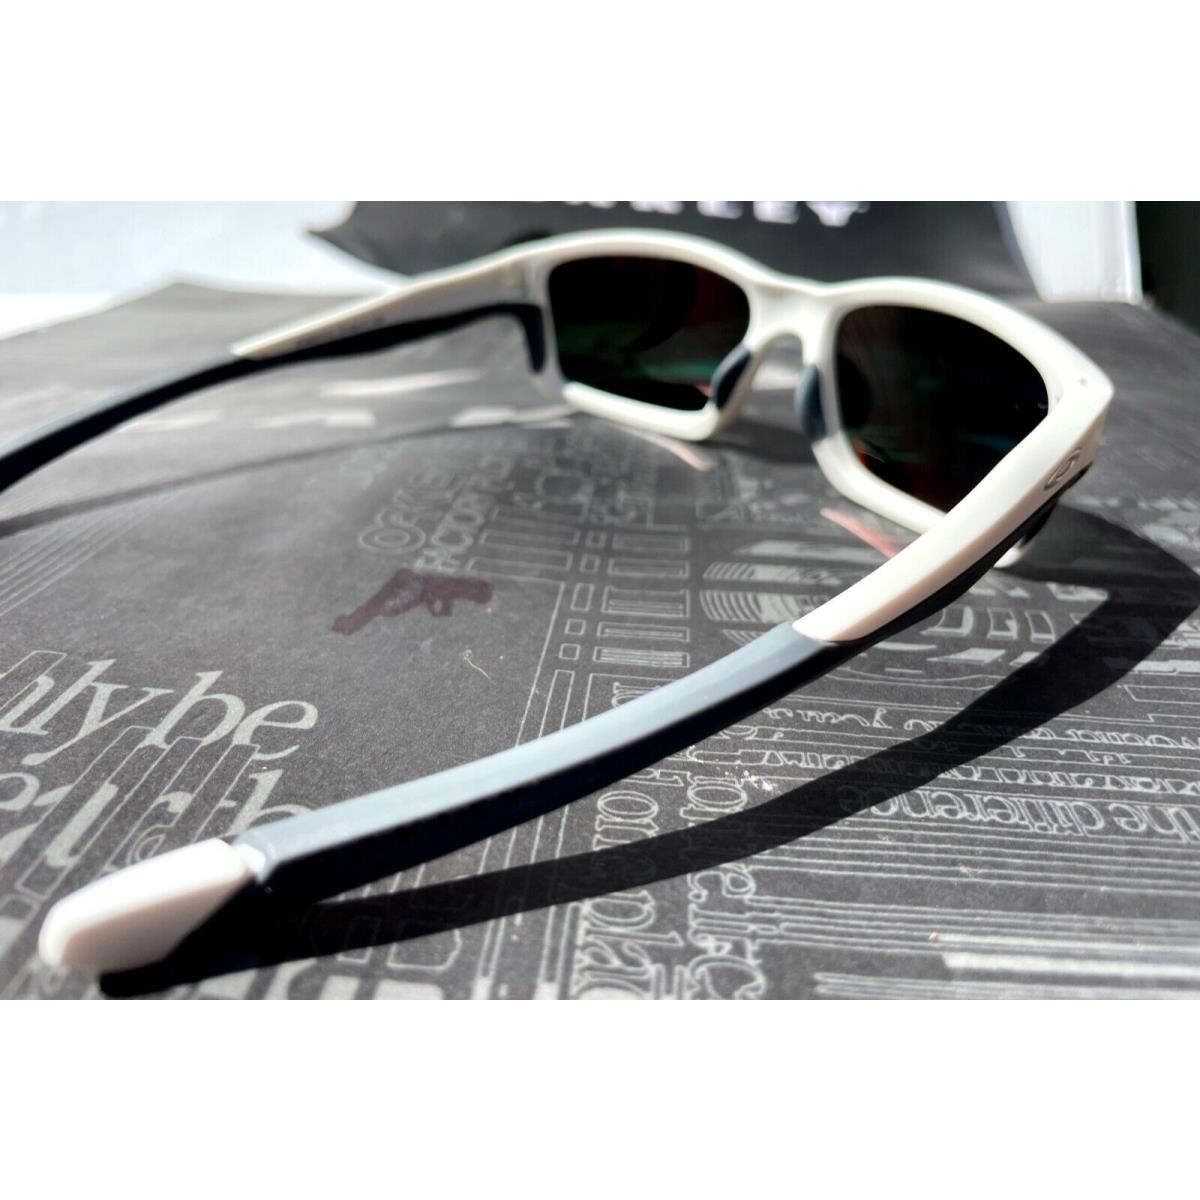 Oakley sunglasses Chainlink - White Frame, Red Lens